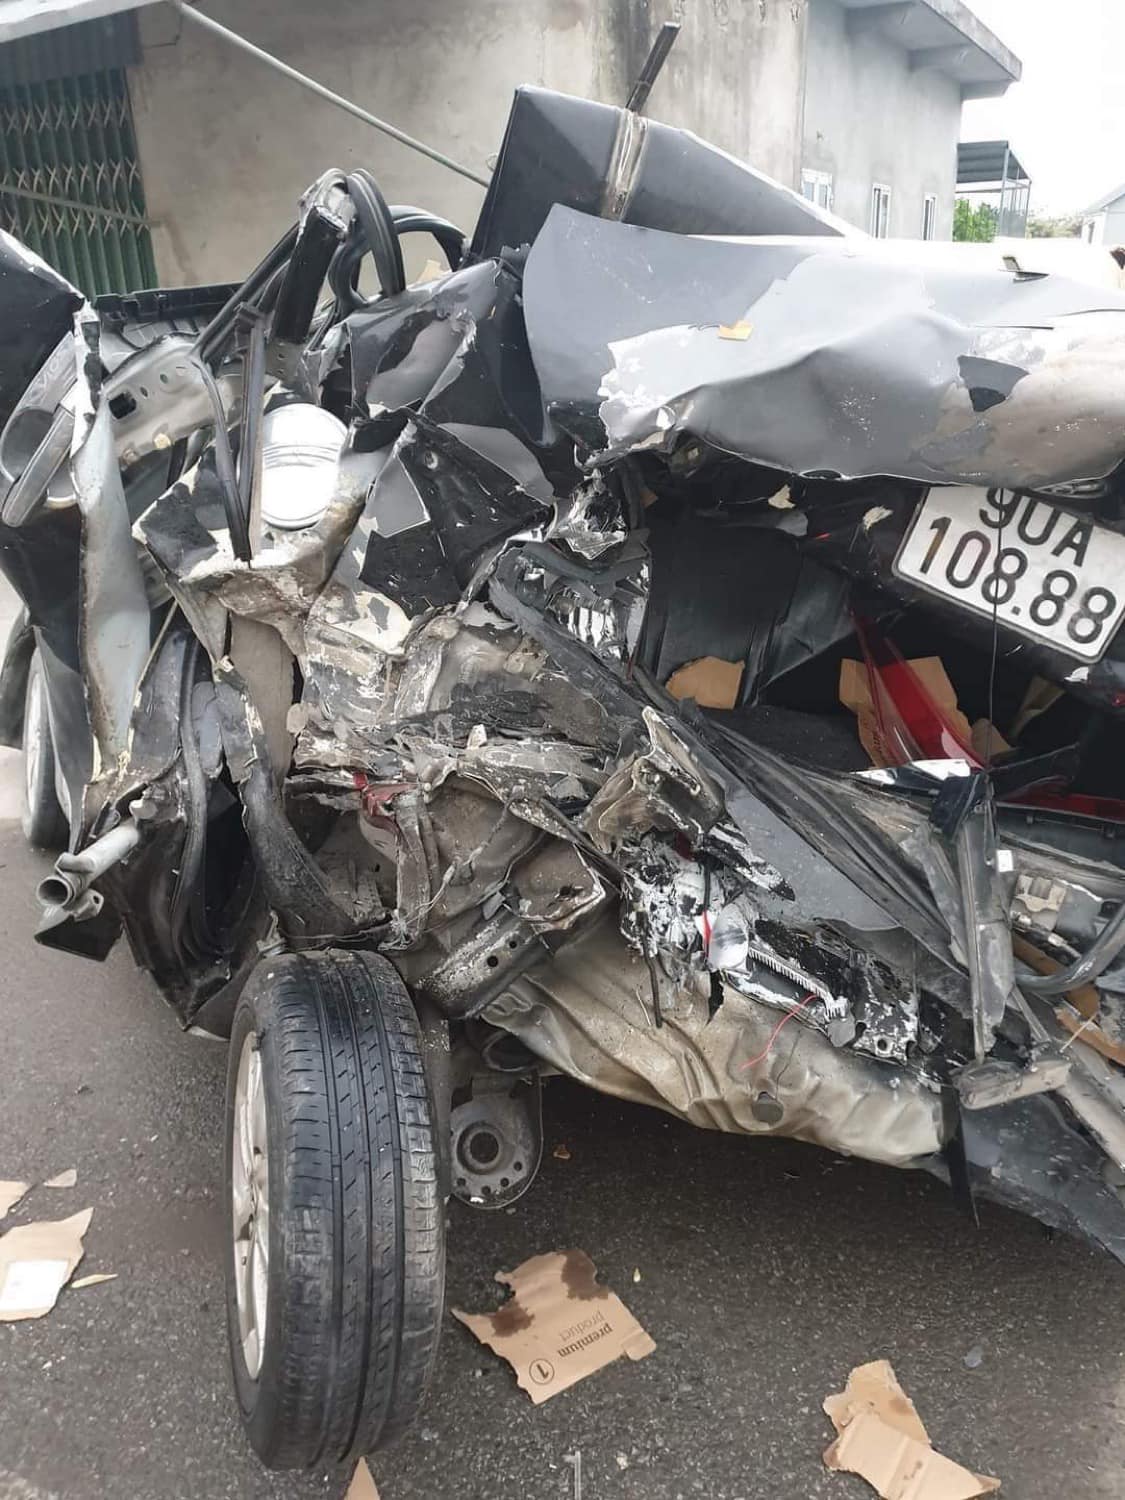 Rao Toyota Vios 2014 'zin cả xe' giá 230 triệu, người bán bị nghi ngờ lừa dối sau loạt ảnh xe tai nạn nát bét với biển số giống hệt - Ảnh 2.